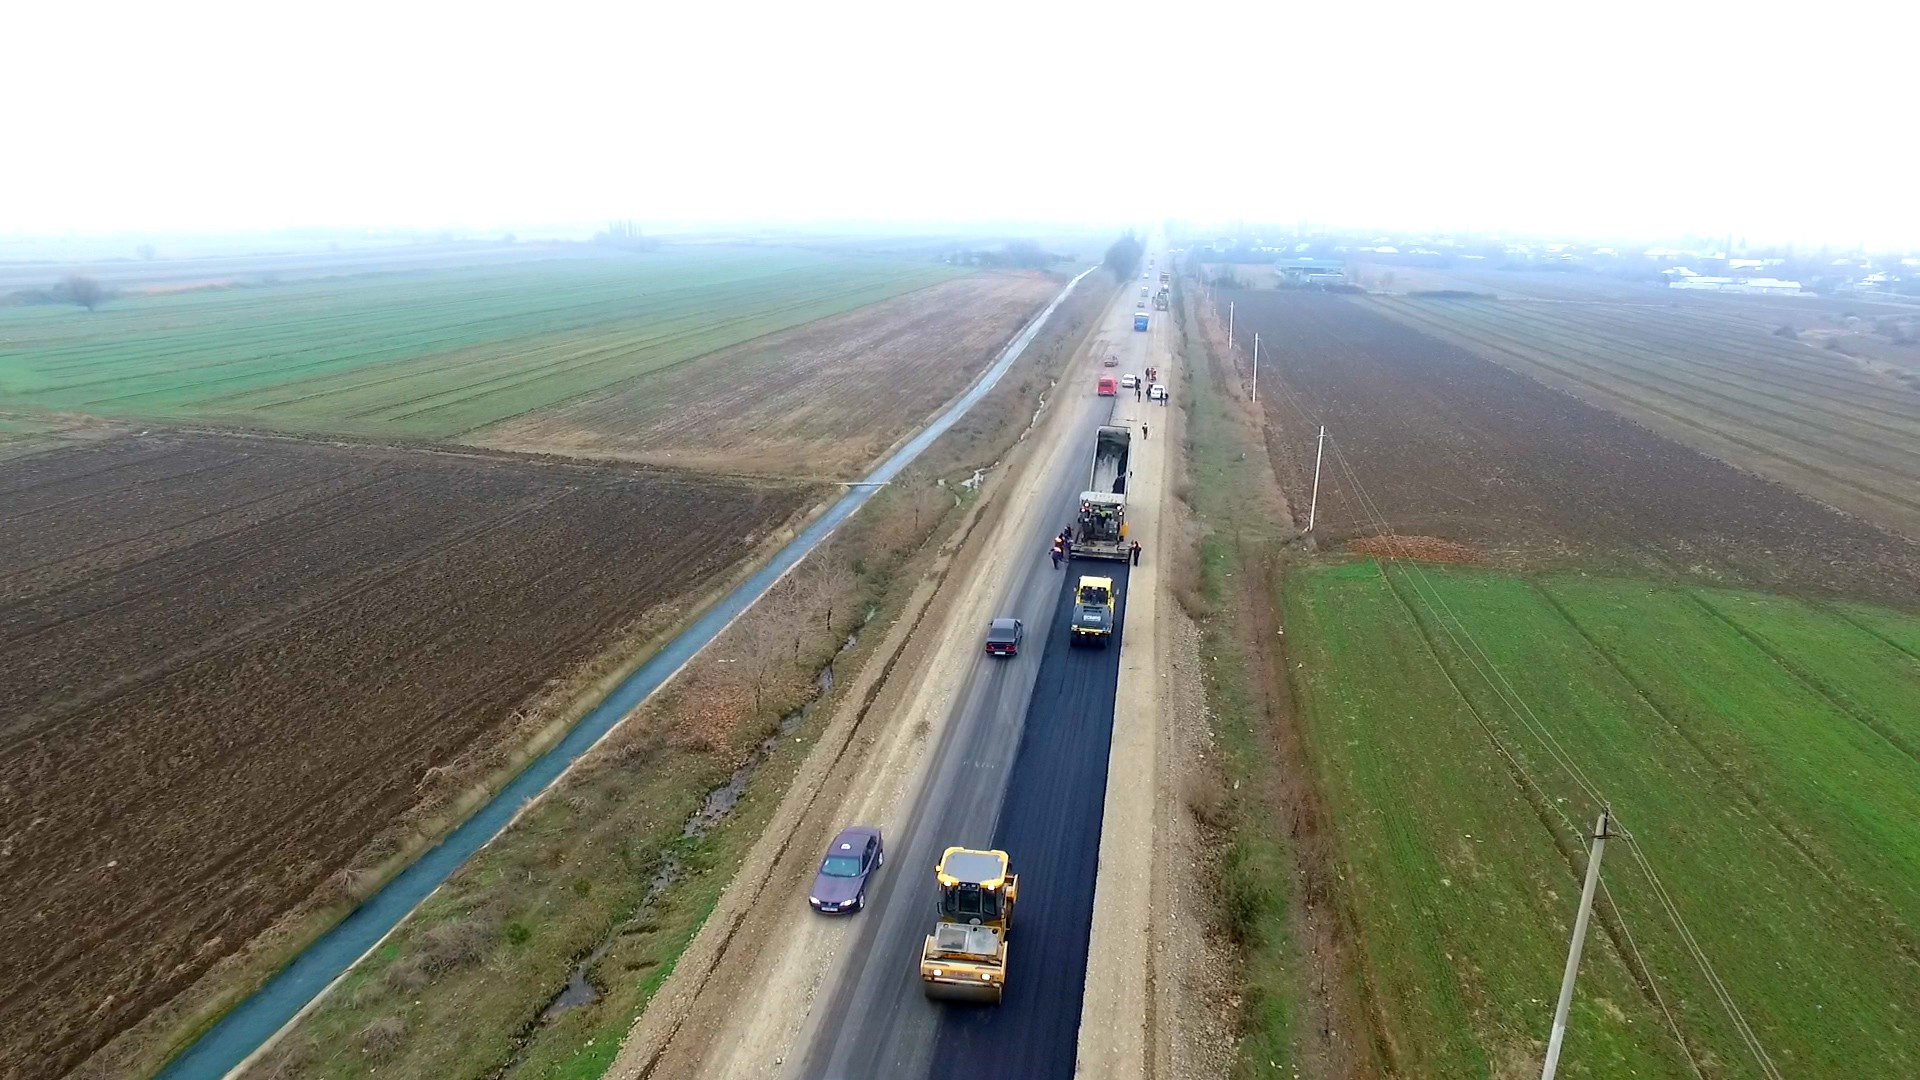 11 Tərtər-Hindarx avtomobil yolunun yenidən qurulması davam etdirilir - VİDEO / FOTO